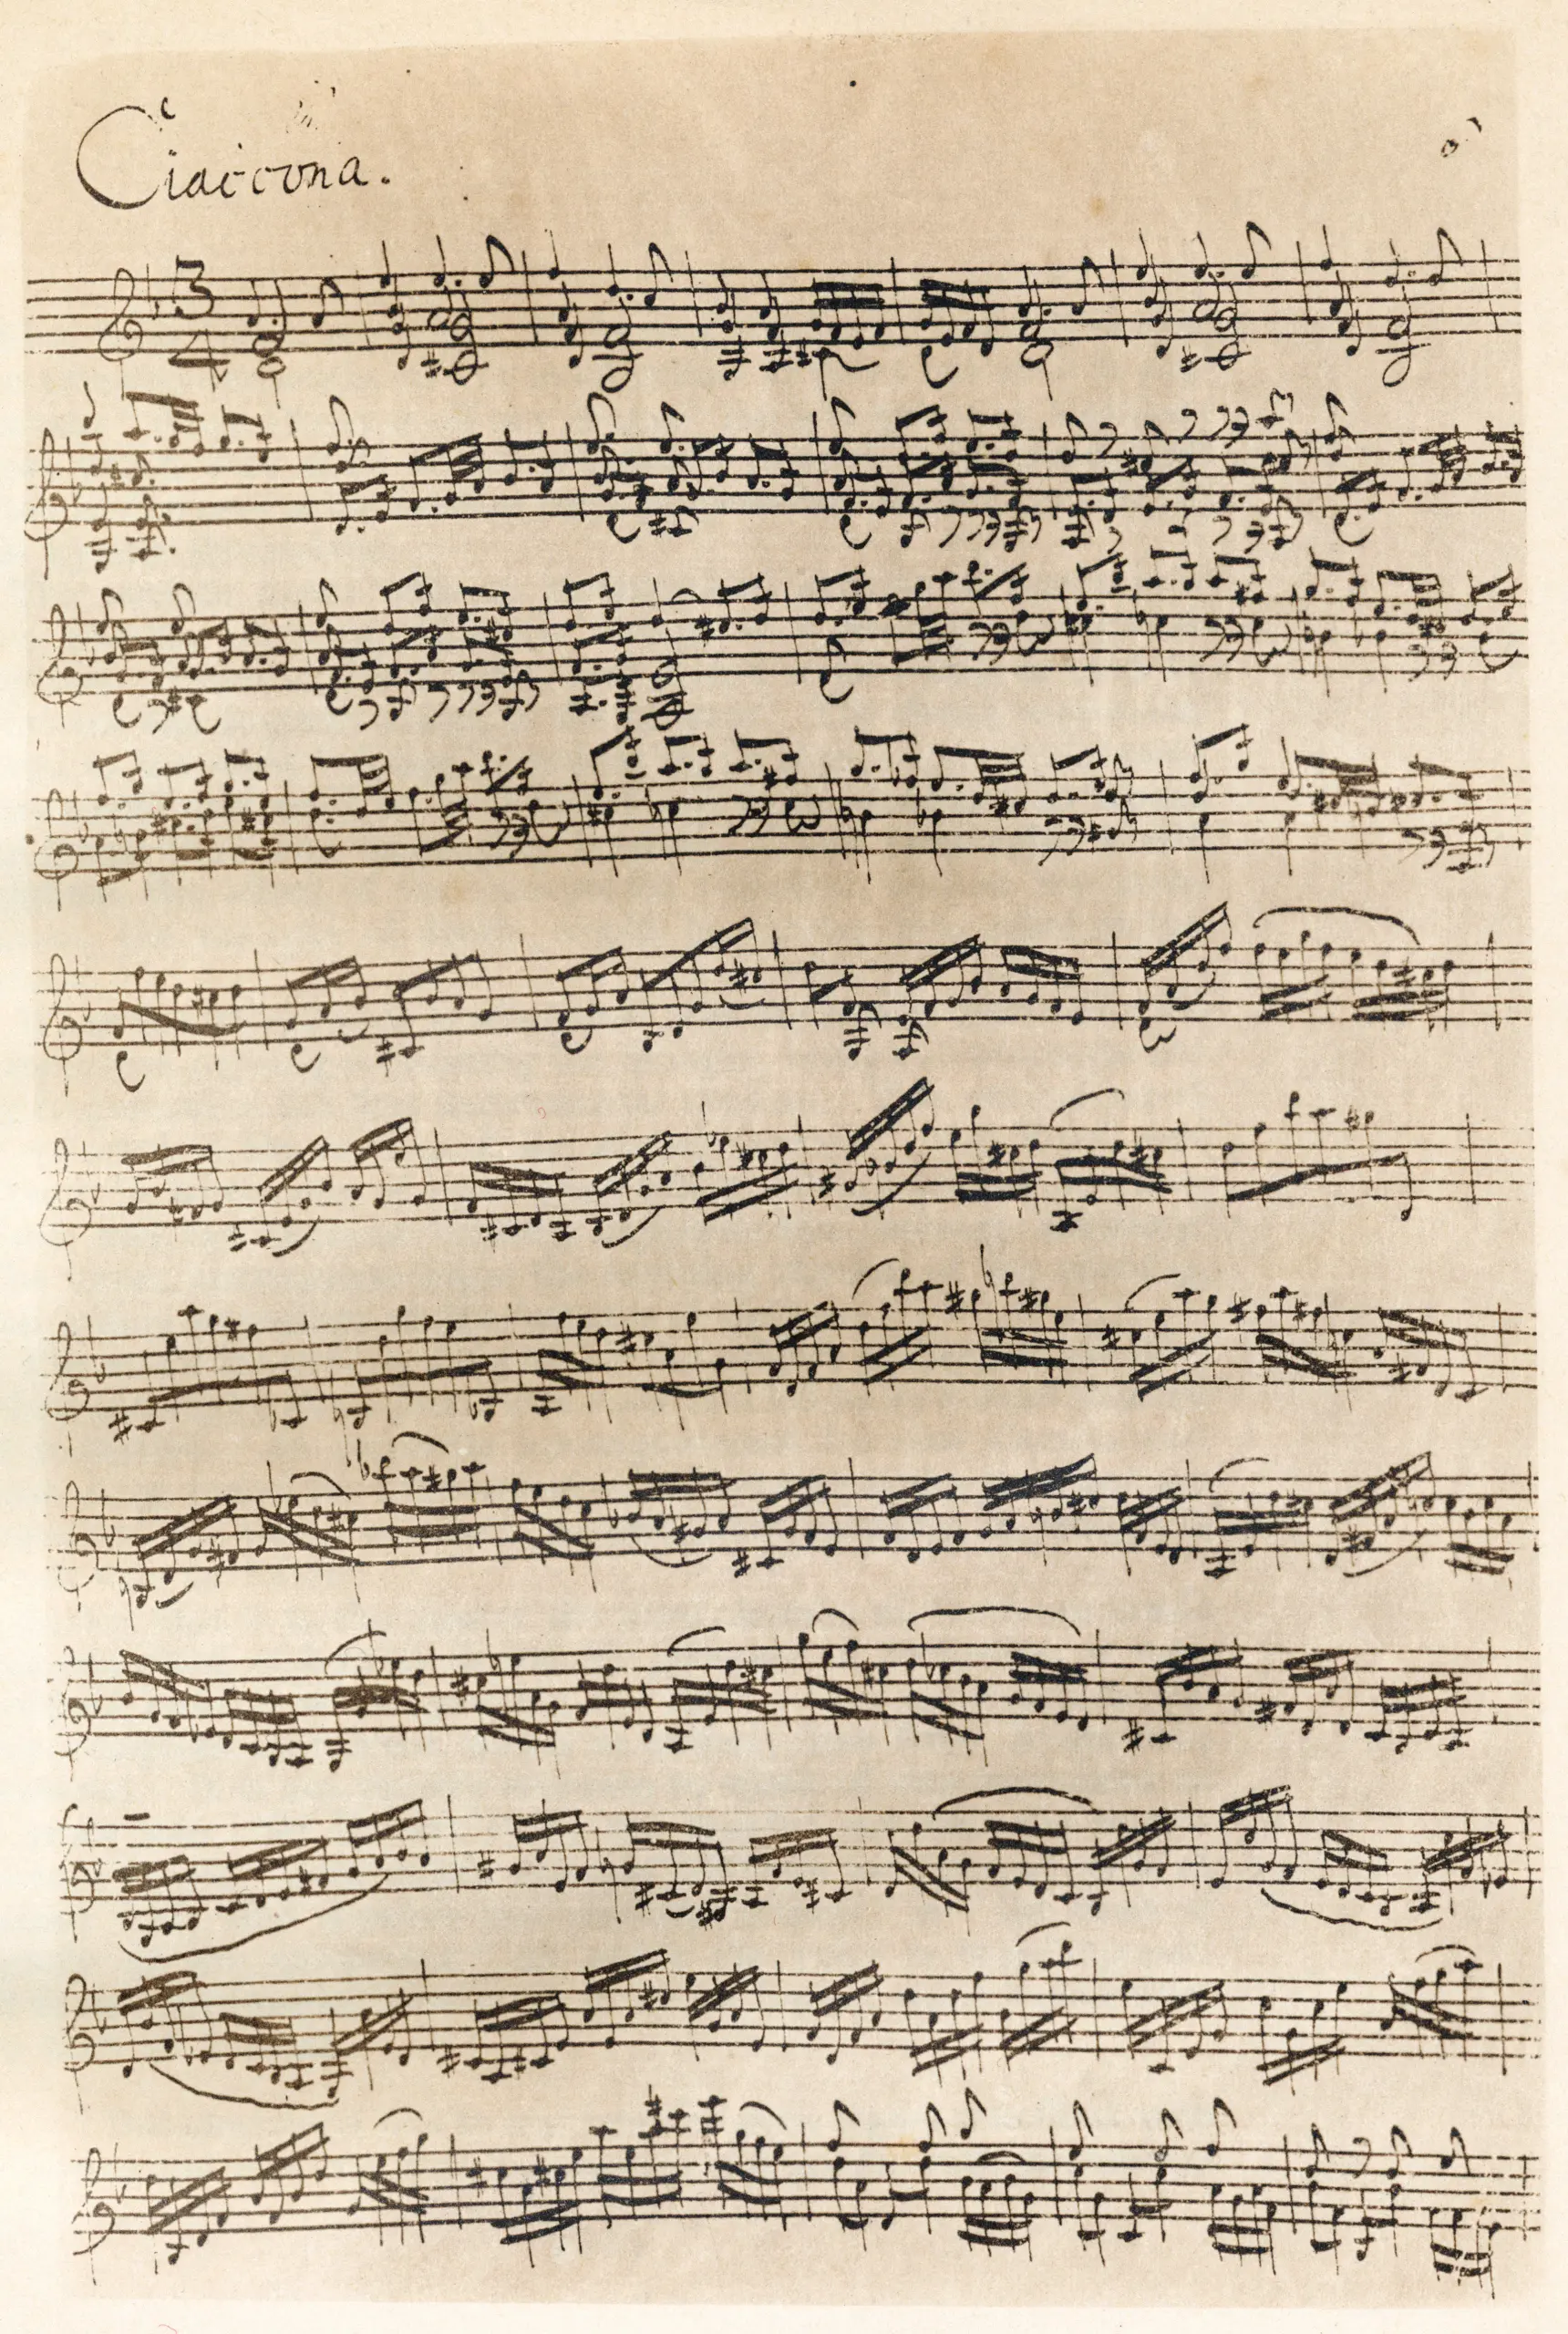 la chacona de bach violin - Cuántas variaciones tiene la Chacona de Bach